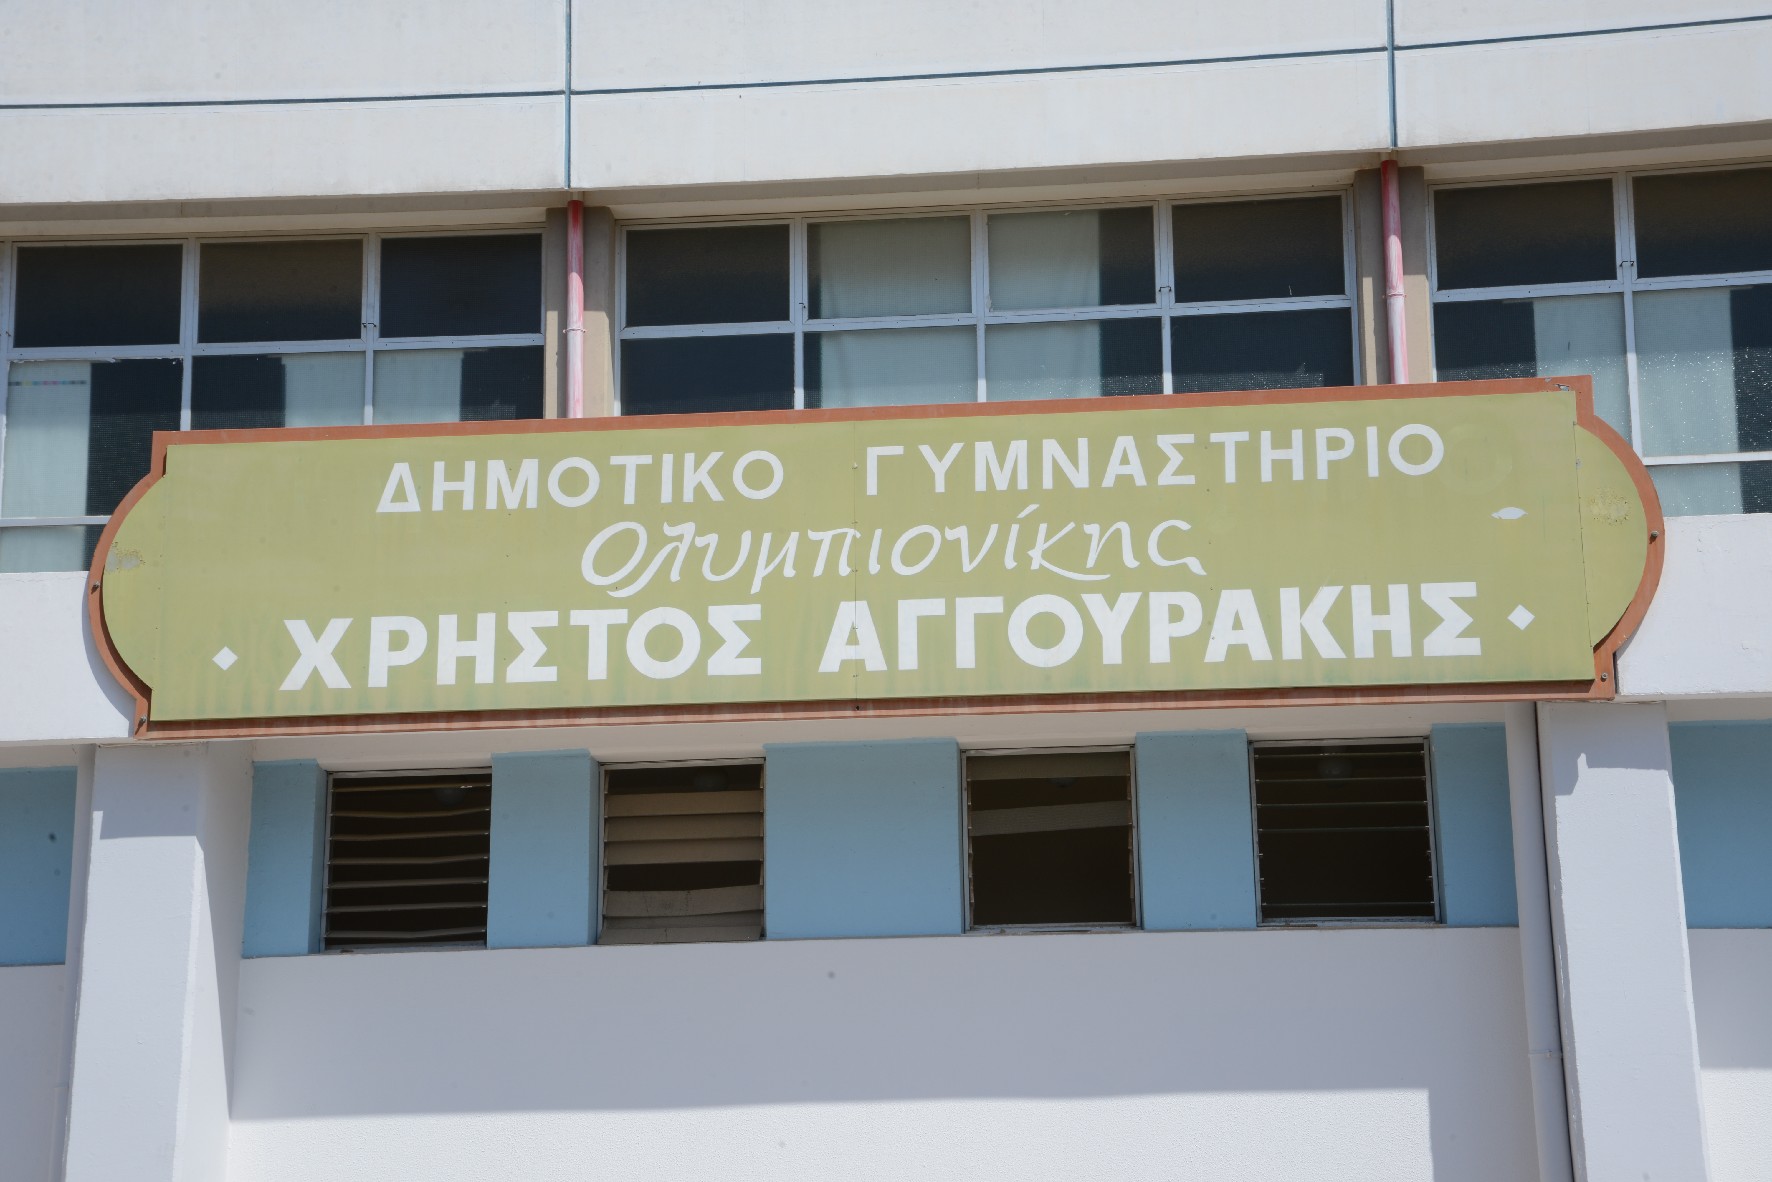 Δημοτικό Γυμναστήριο Χρήστος Αγγουράκης